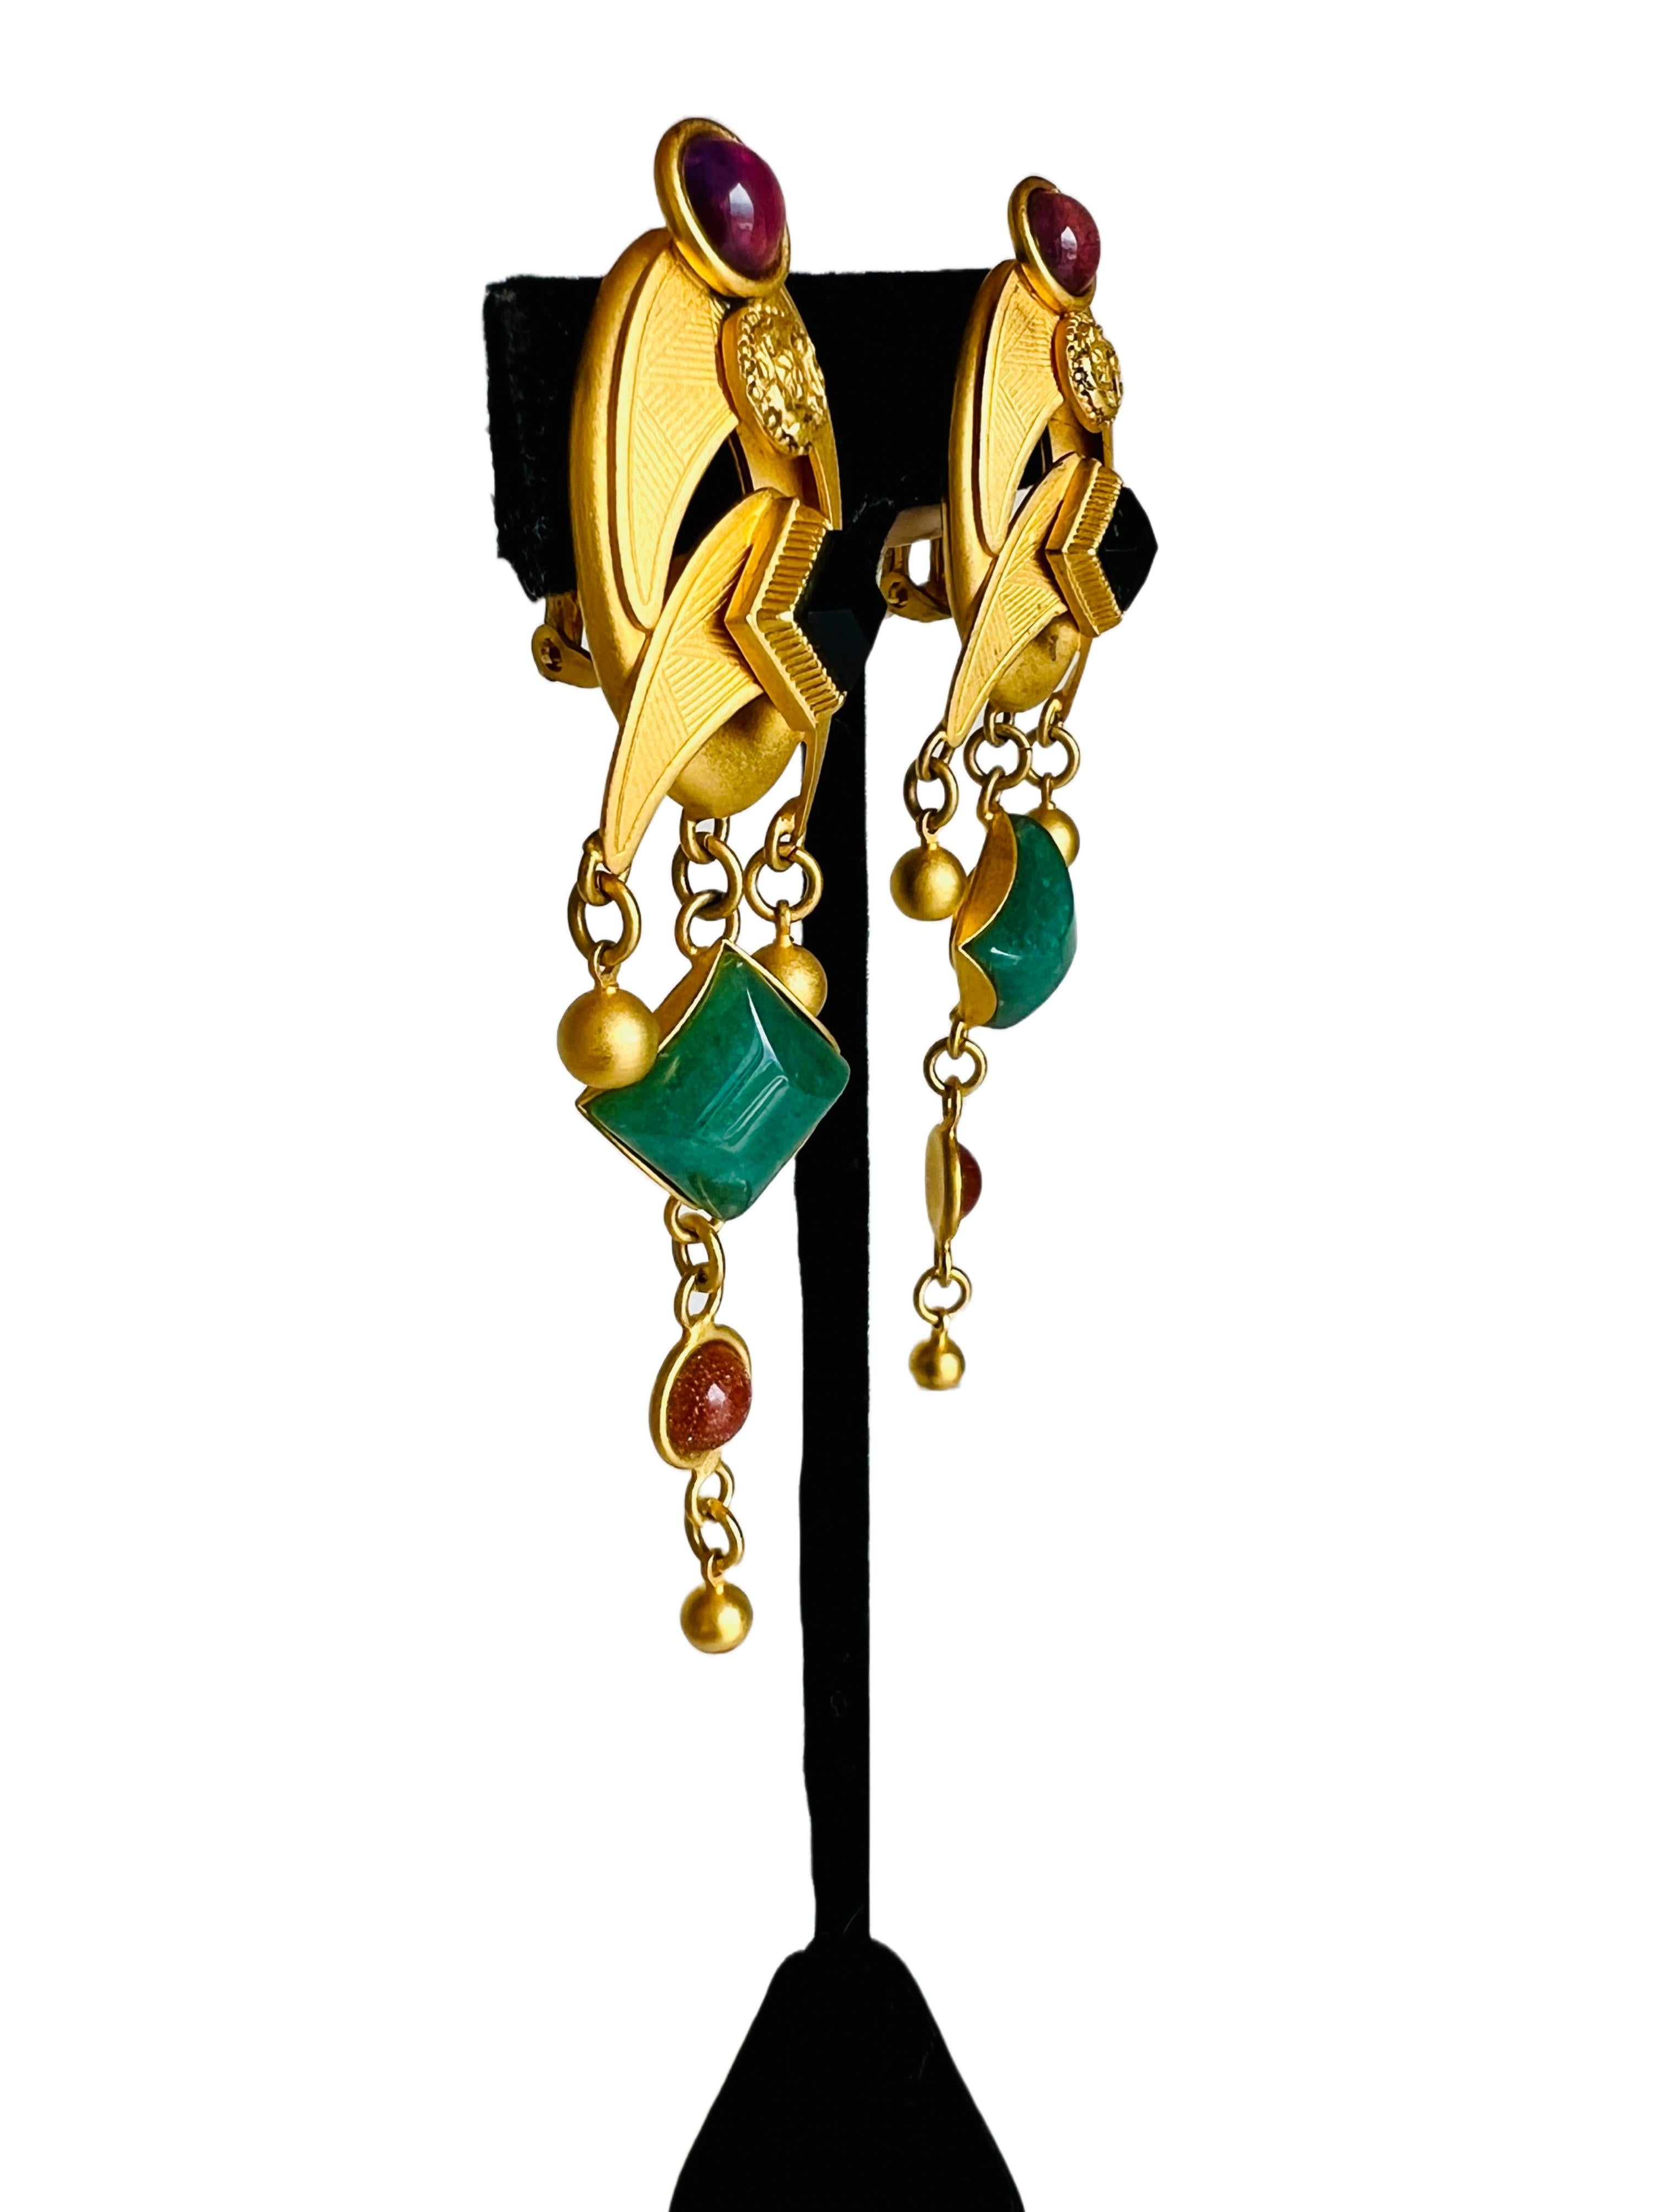 Diese atemberaubenden Ohrringe von Natasha Stambouli zeigen ein Haute-Couture-Design im Stil des etruskischen Revivals, verziert mit Halbedelsteinen in leuchtenden Multicolor-Farbtönen. Die Ohrringe sind mit vier Steinen besetzt: einem